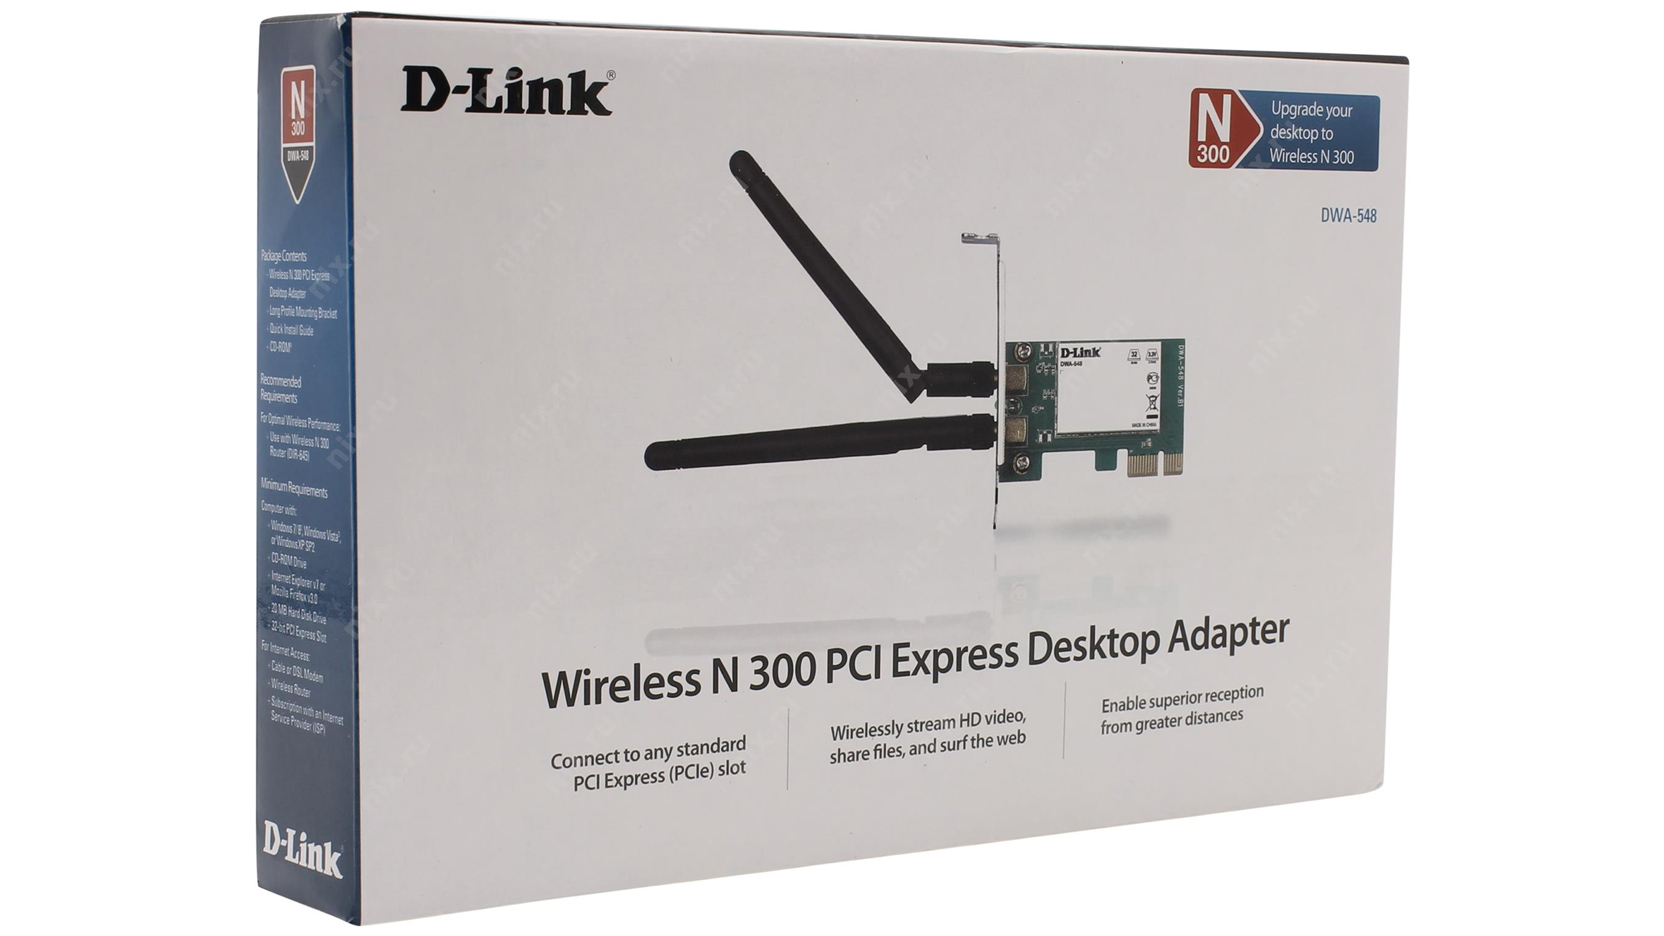 D-Link Wireless N300 PCI Express Desktop Adapter